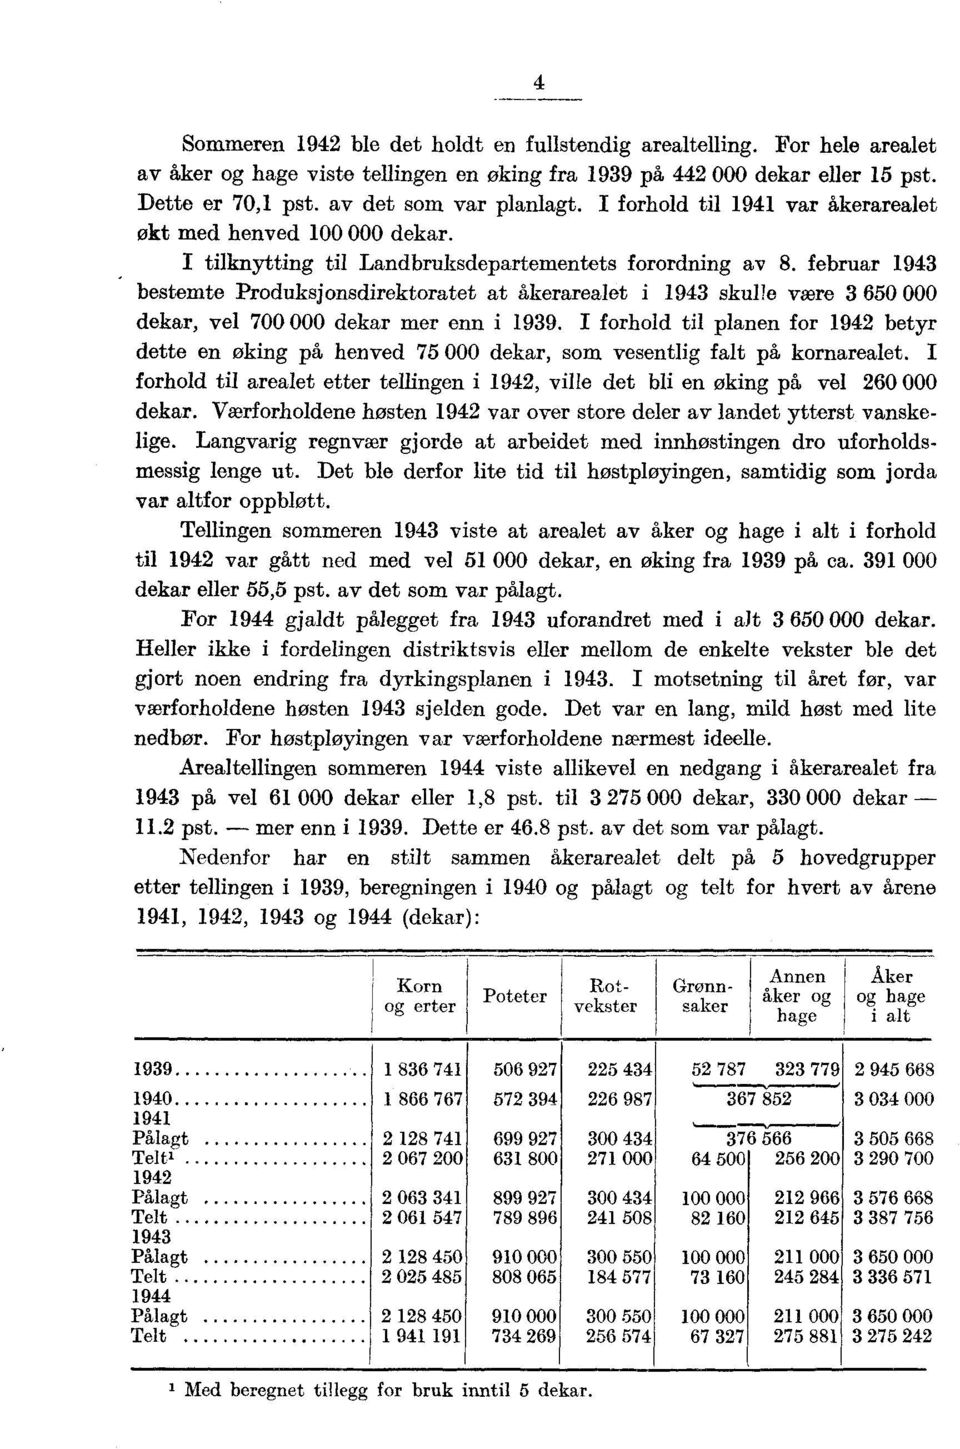 februar 1943 bestemte Produksjonsdirektoratet at åkerarealet i 1943 skulle være 3 650 000 dekar, vel 700 000 dekar mer enn i 1939.